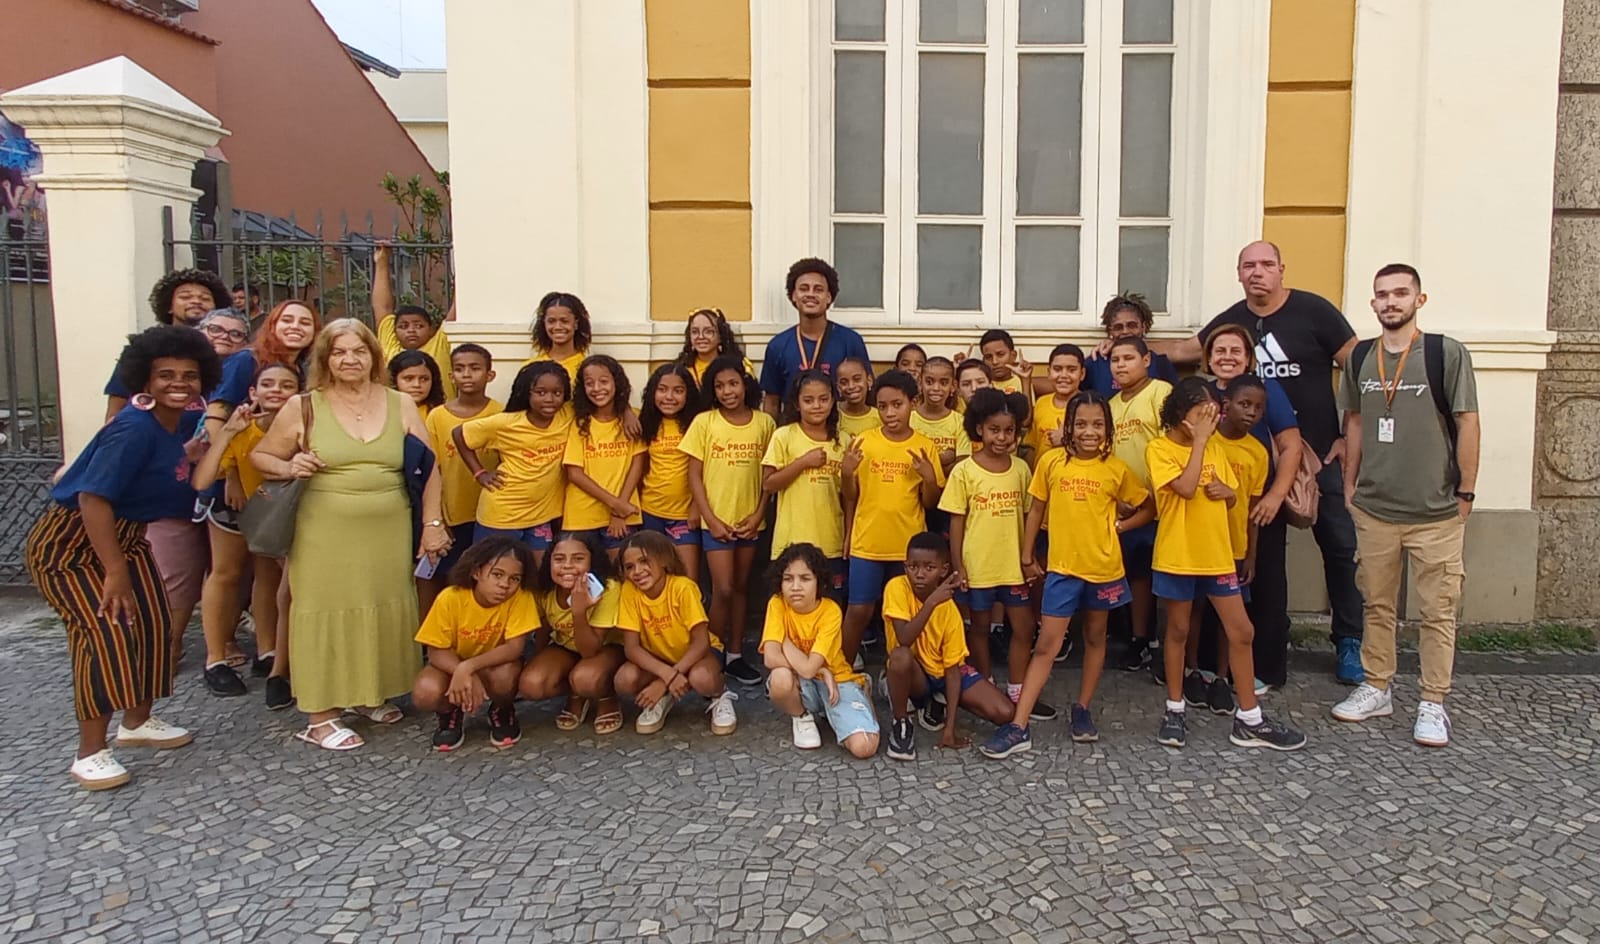 Clin social leva estudantes da rede pública para assistir espetáculo infantil no Theatro Municipal de Niterói